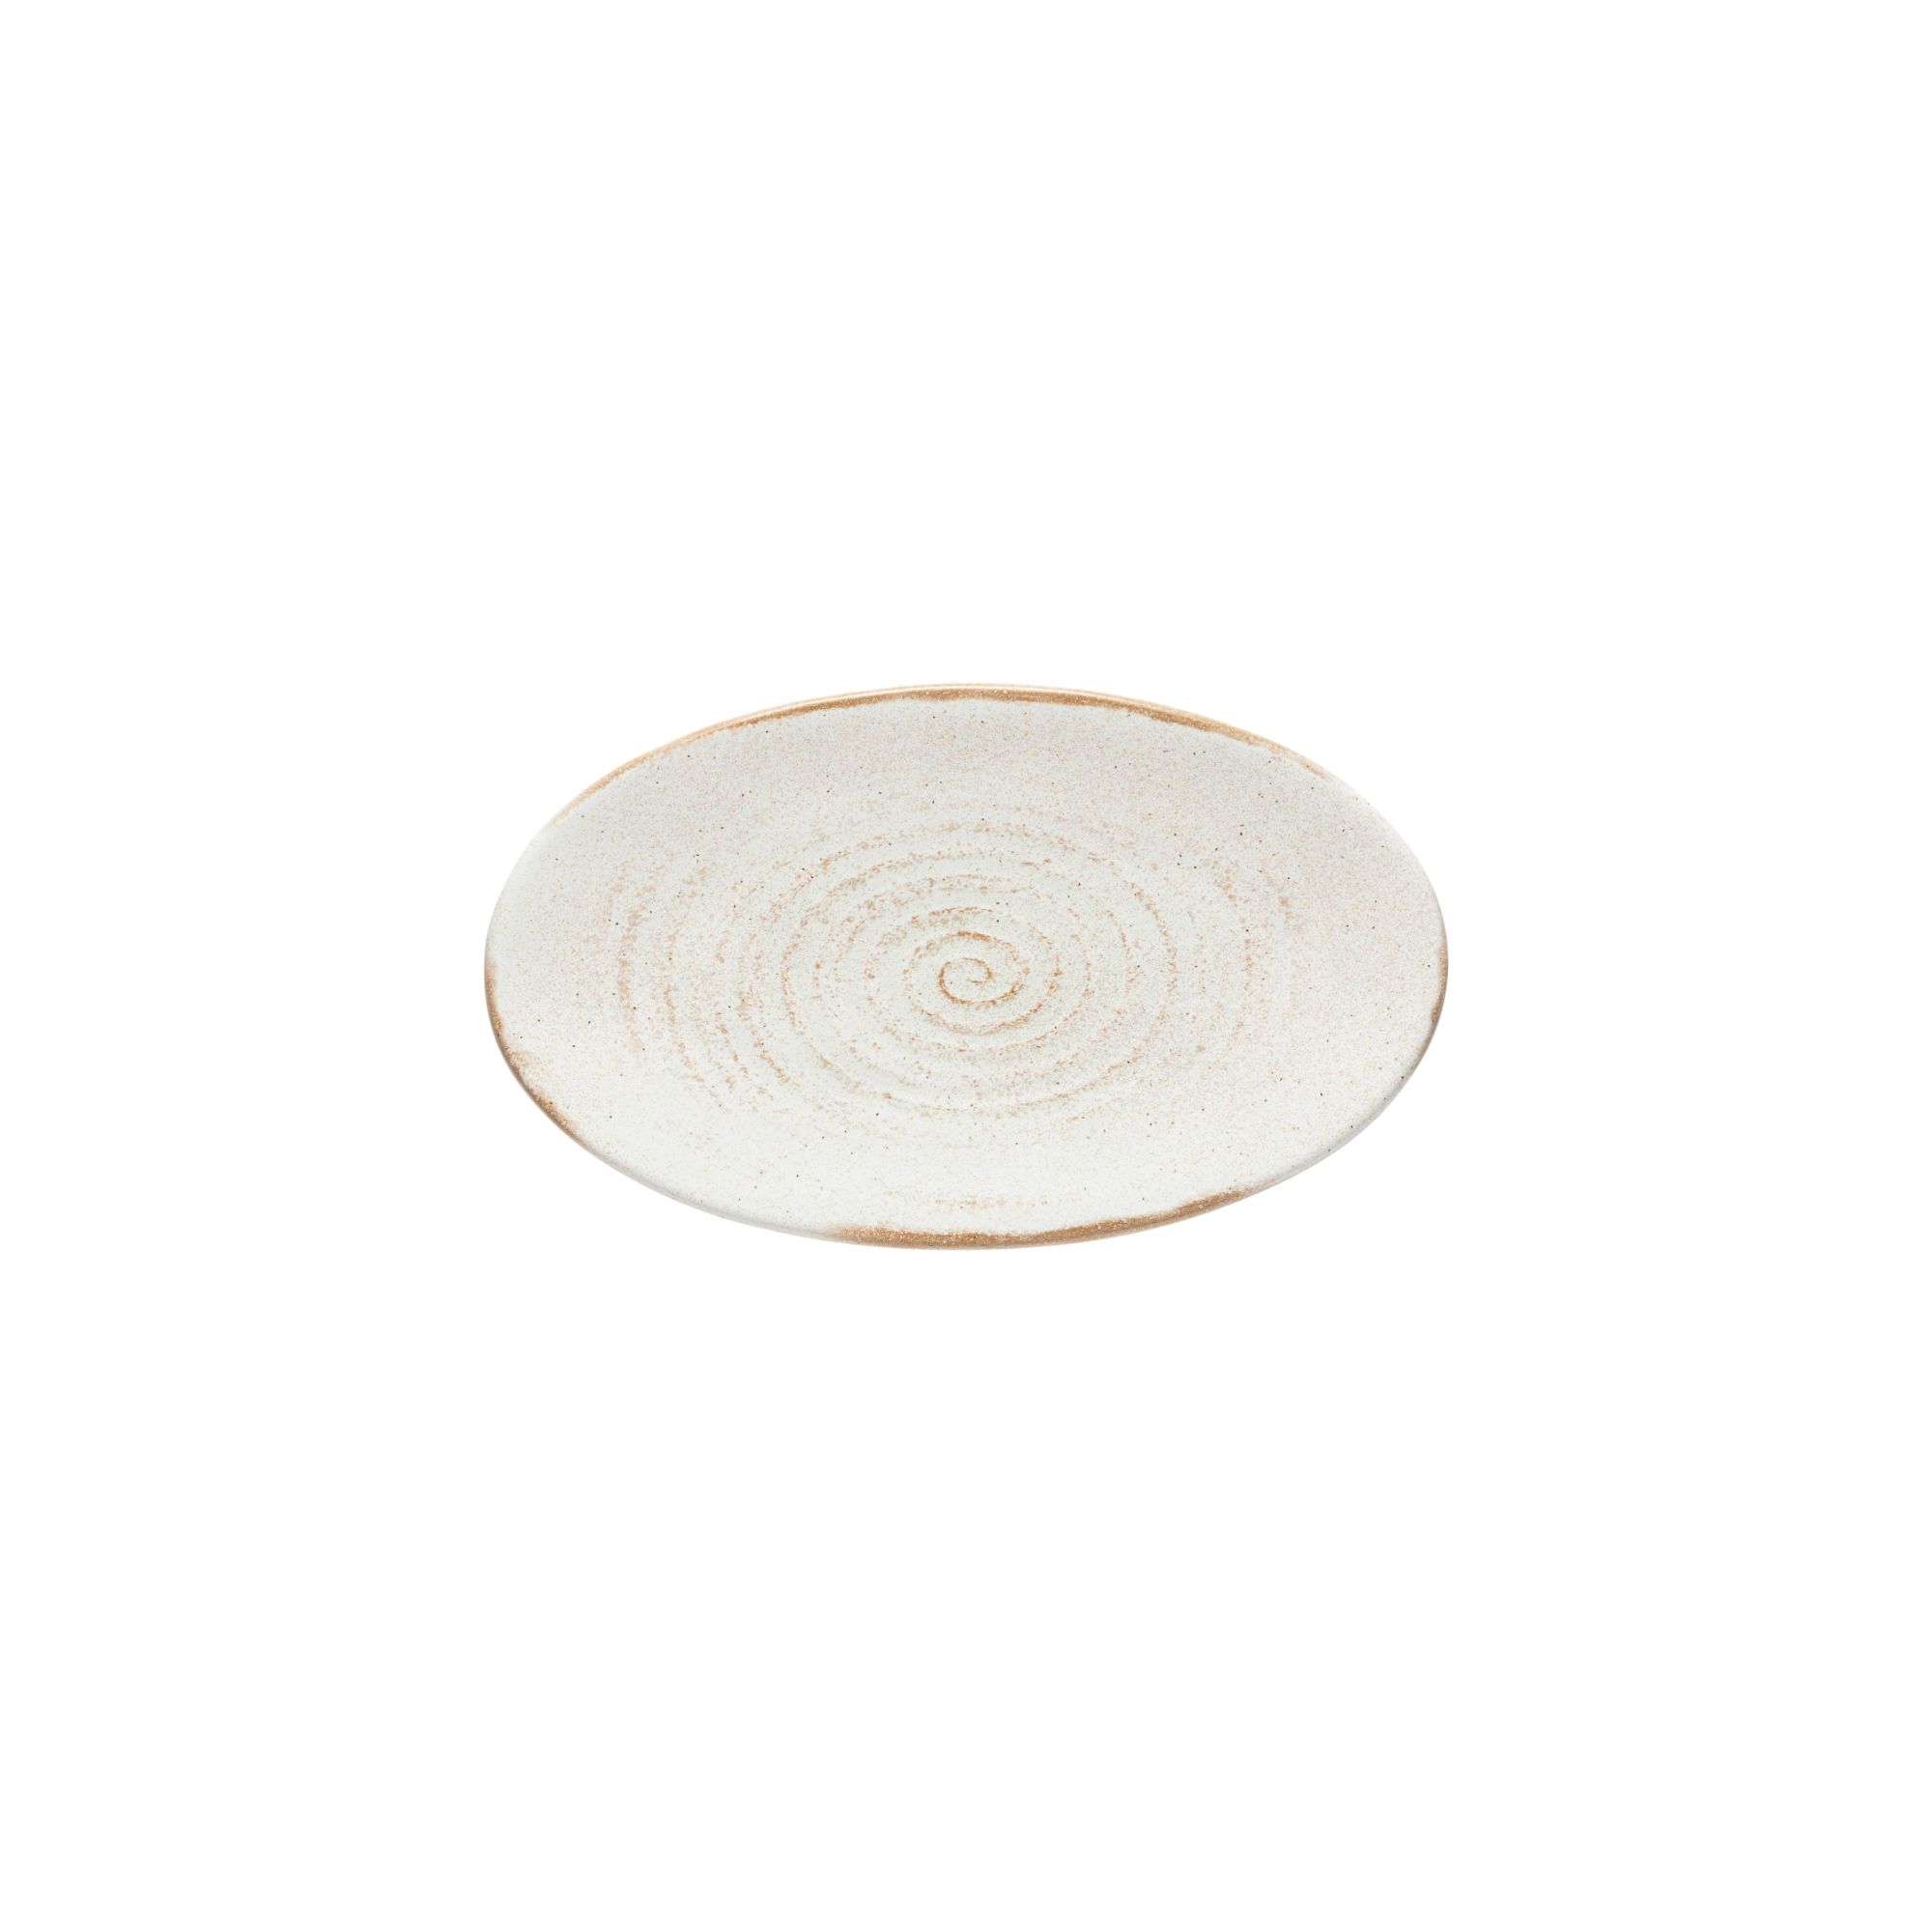 Vermont Cream Oval Platter 22cm Gift